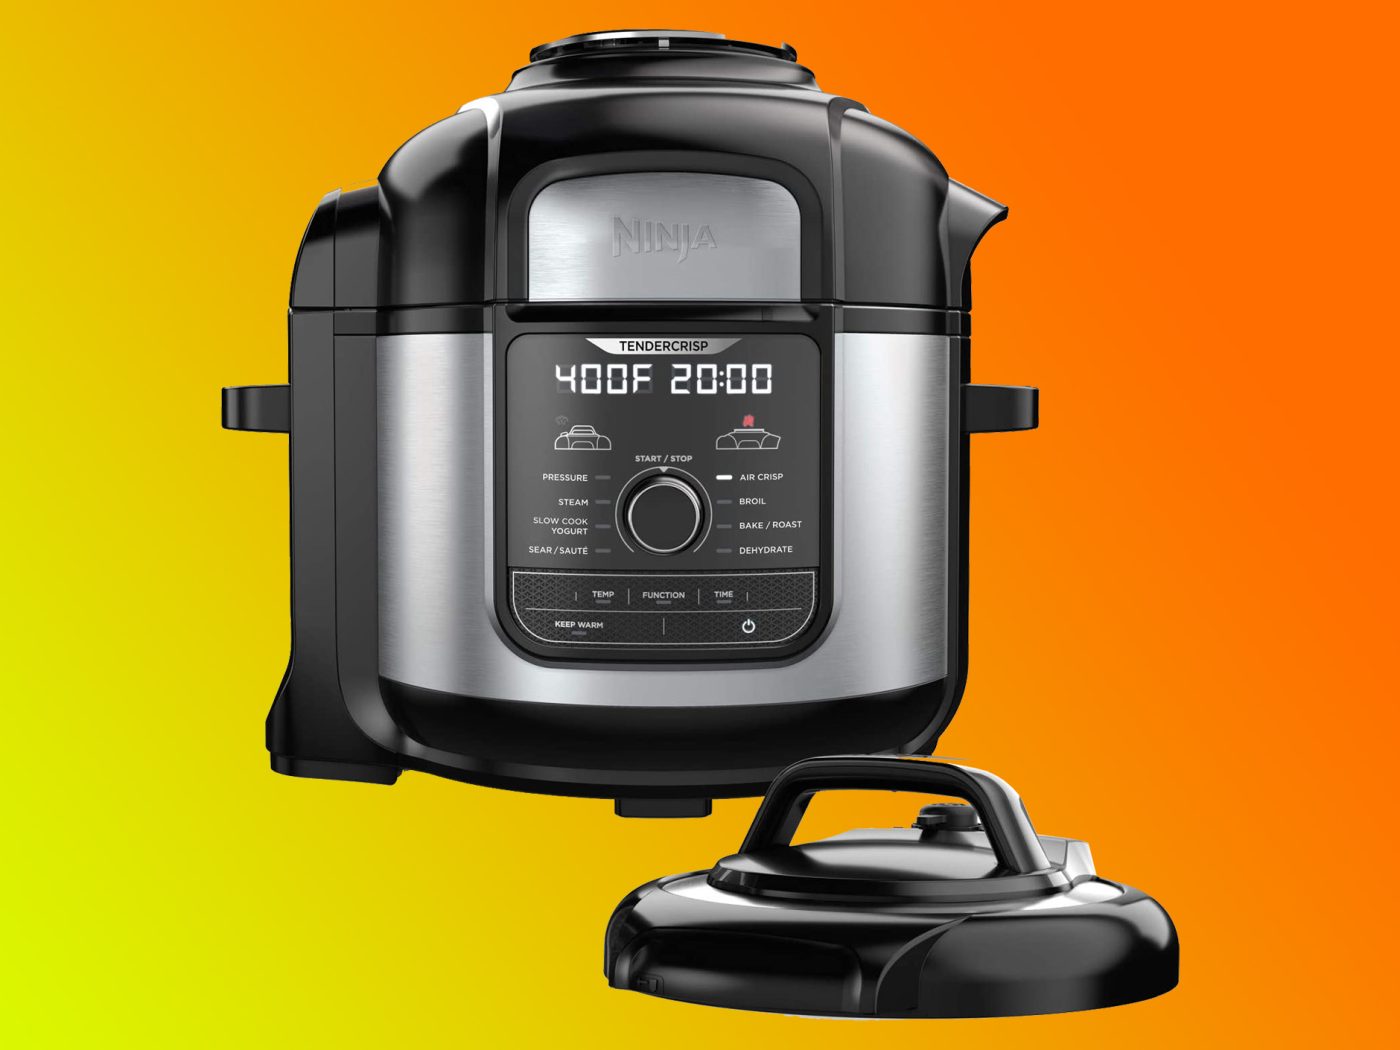  Ninja OS301 Foodi 10-in-1 Pressure Cooker and Air